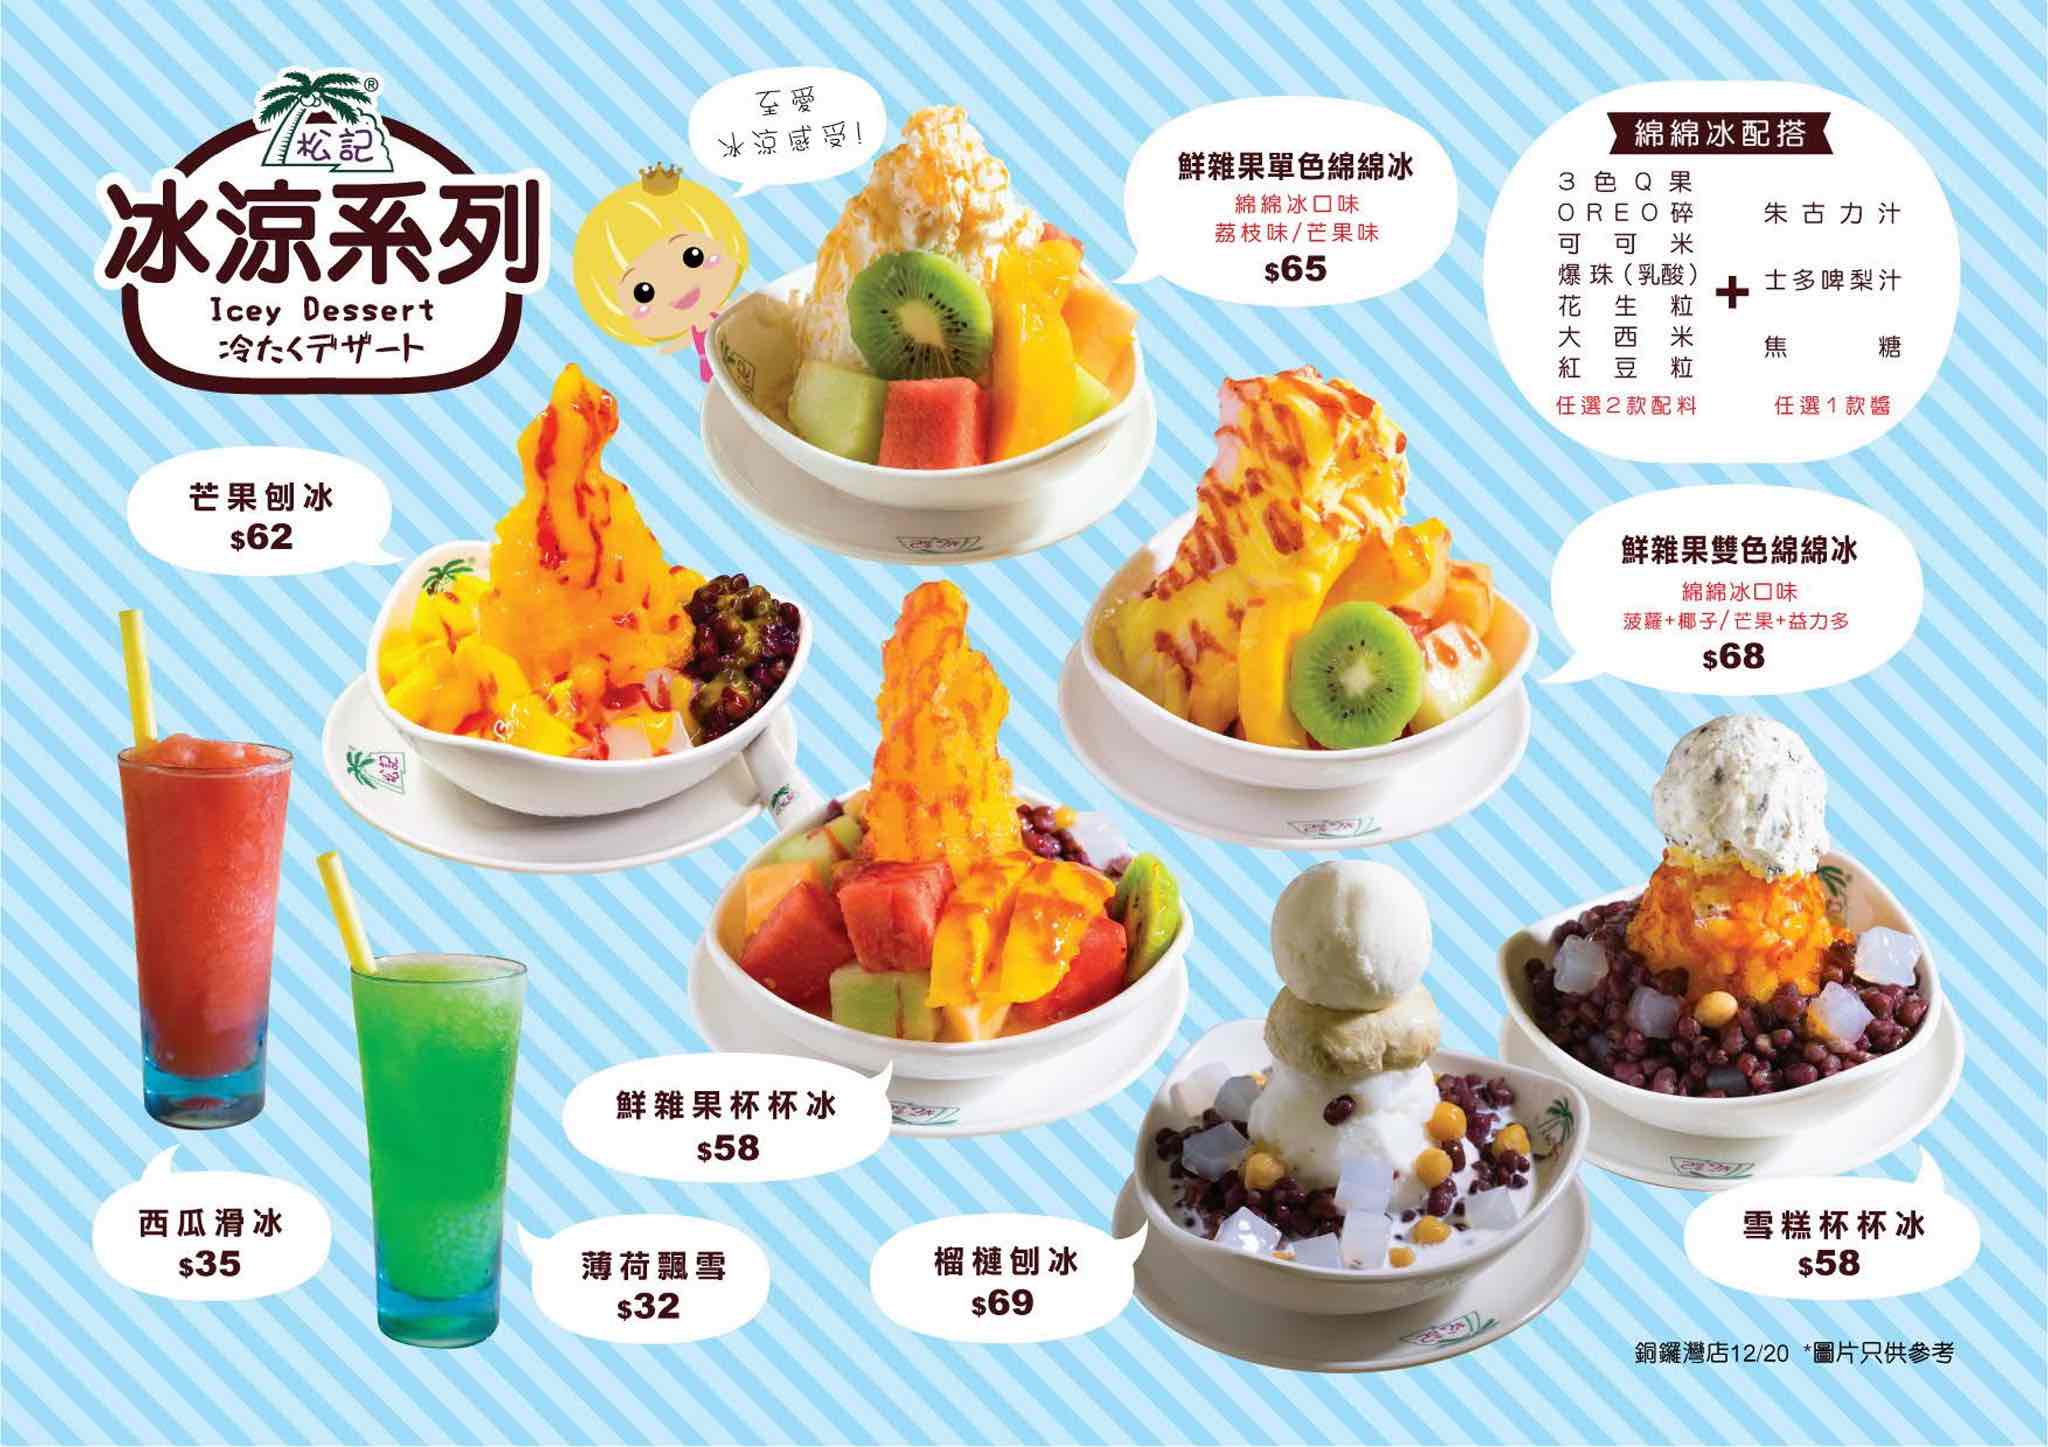 松記糖水店 ChungKee Dessert的特許經營香港區加盟店項目5